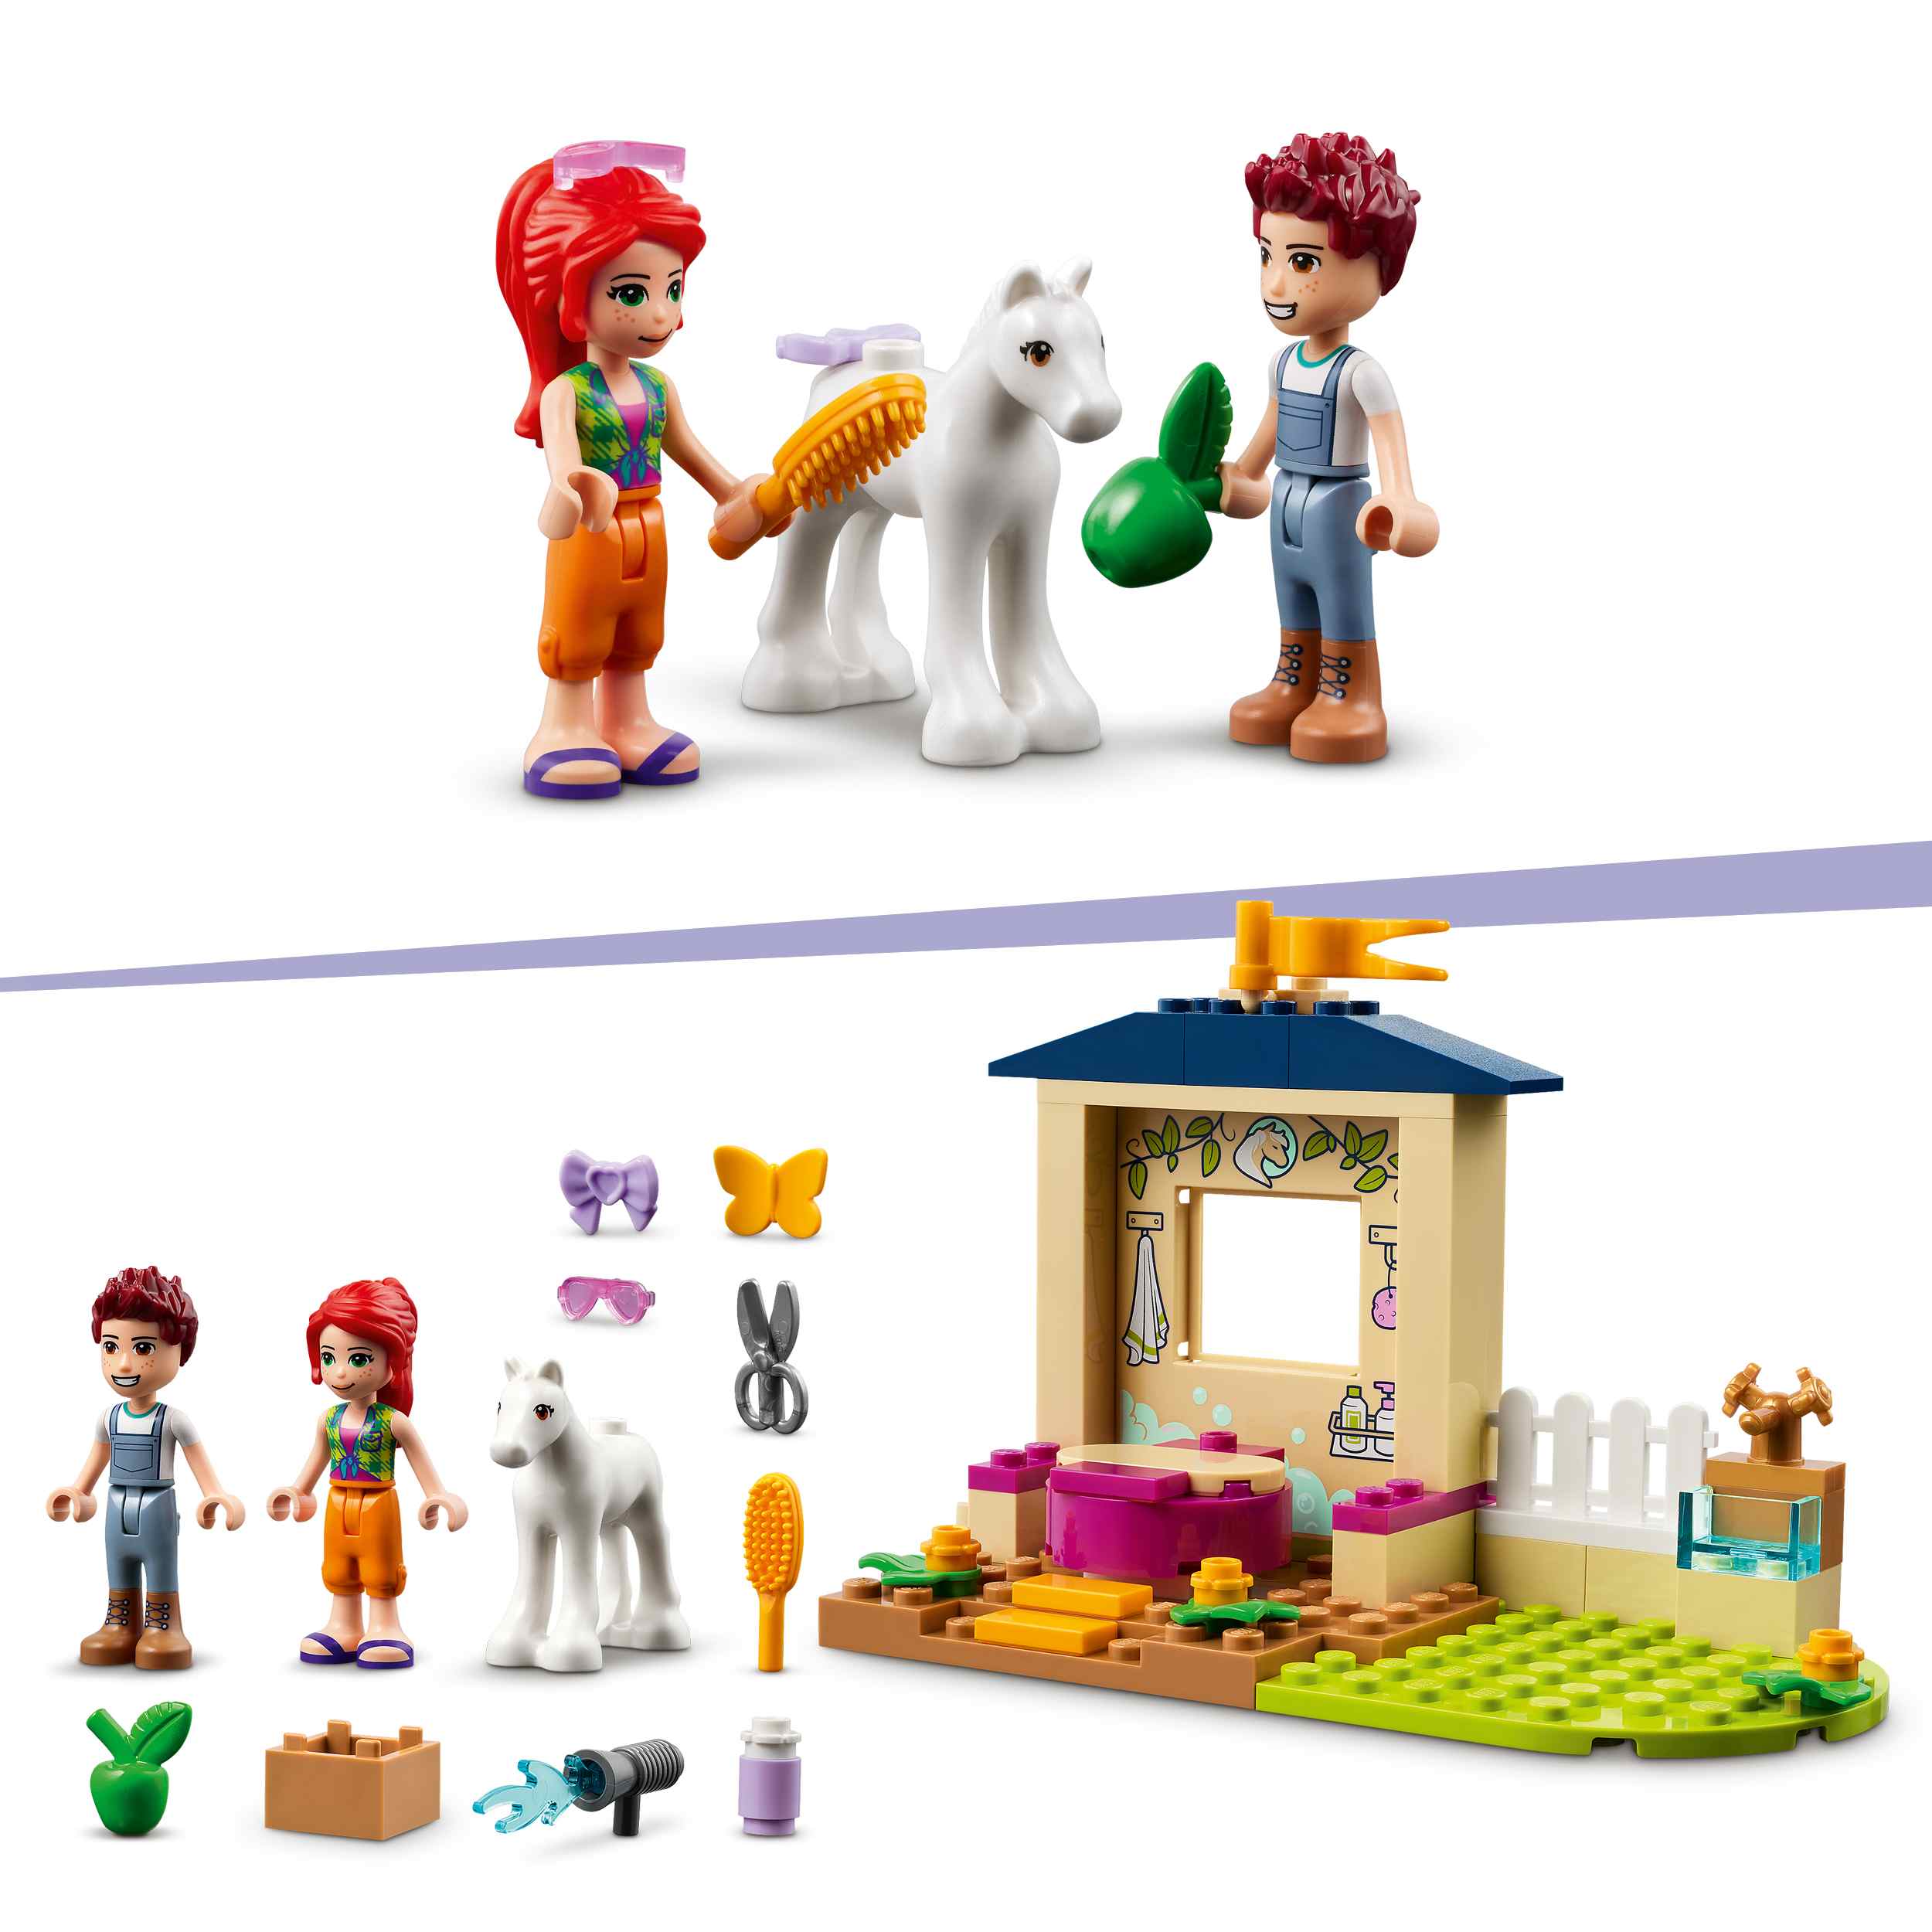 Lego friends 41696 stalla di toelettatura dei pony, con cavallo giocattolo e mini bamboline mia e daniel, giochi per bambini - LEGO FRIENDS, Lego